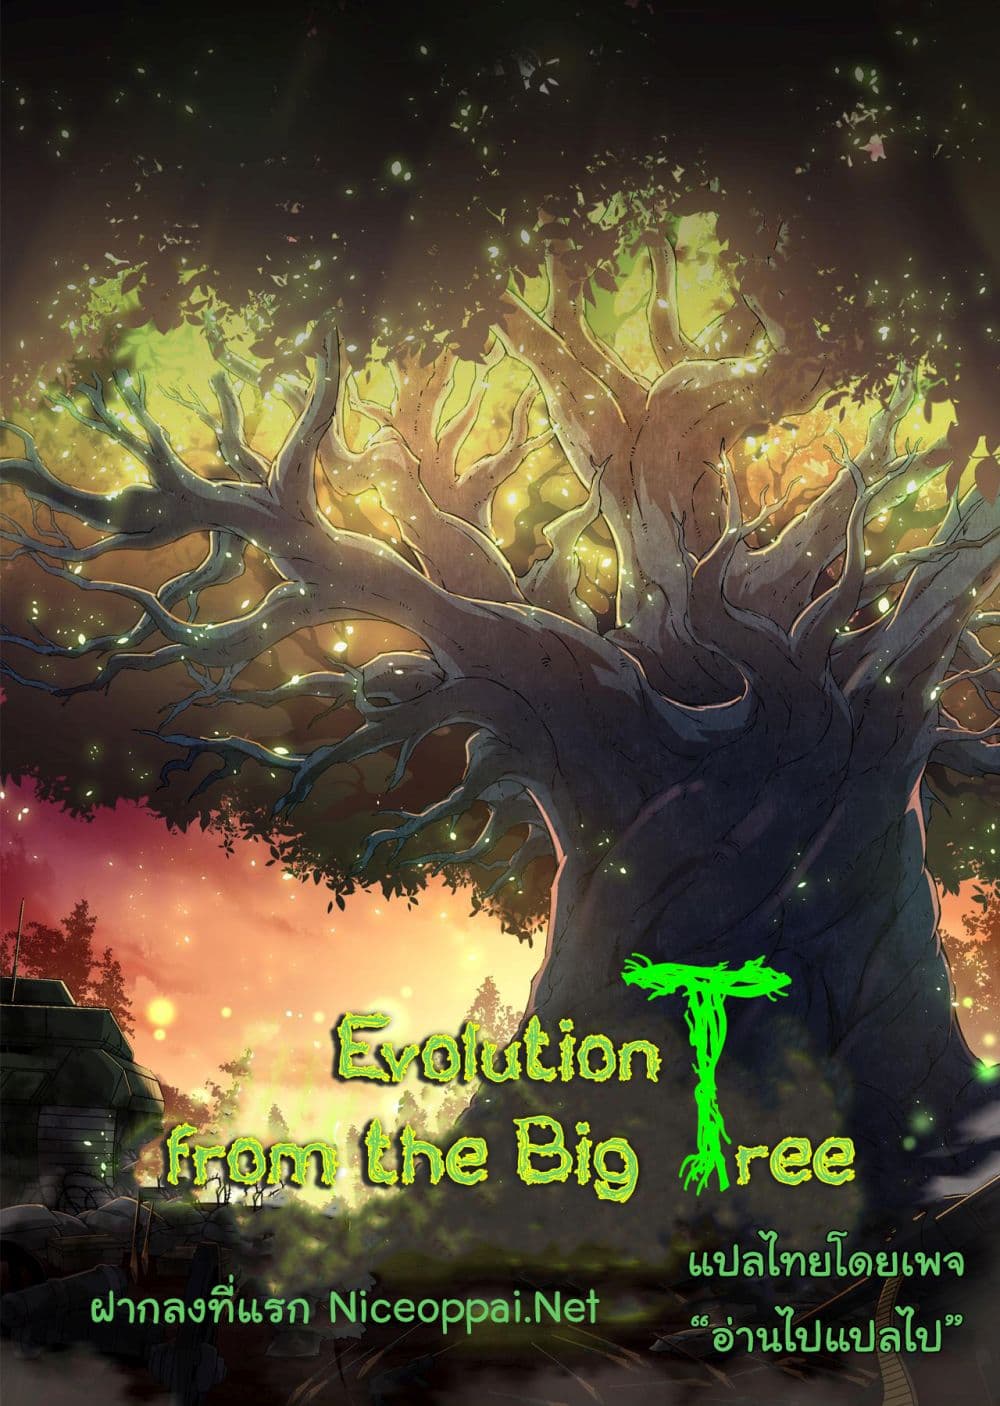 Evolution from the Big Tree Ã Â¸â€¢Ã Â¸Â­Ã Â¸â„¢Ã Â¸â€”Ã Â¸ÂµÃ Â¹Ë† 25 (1)